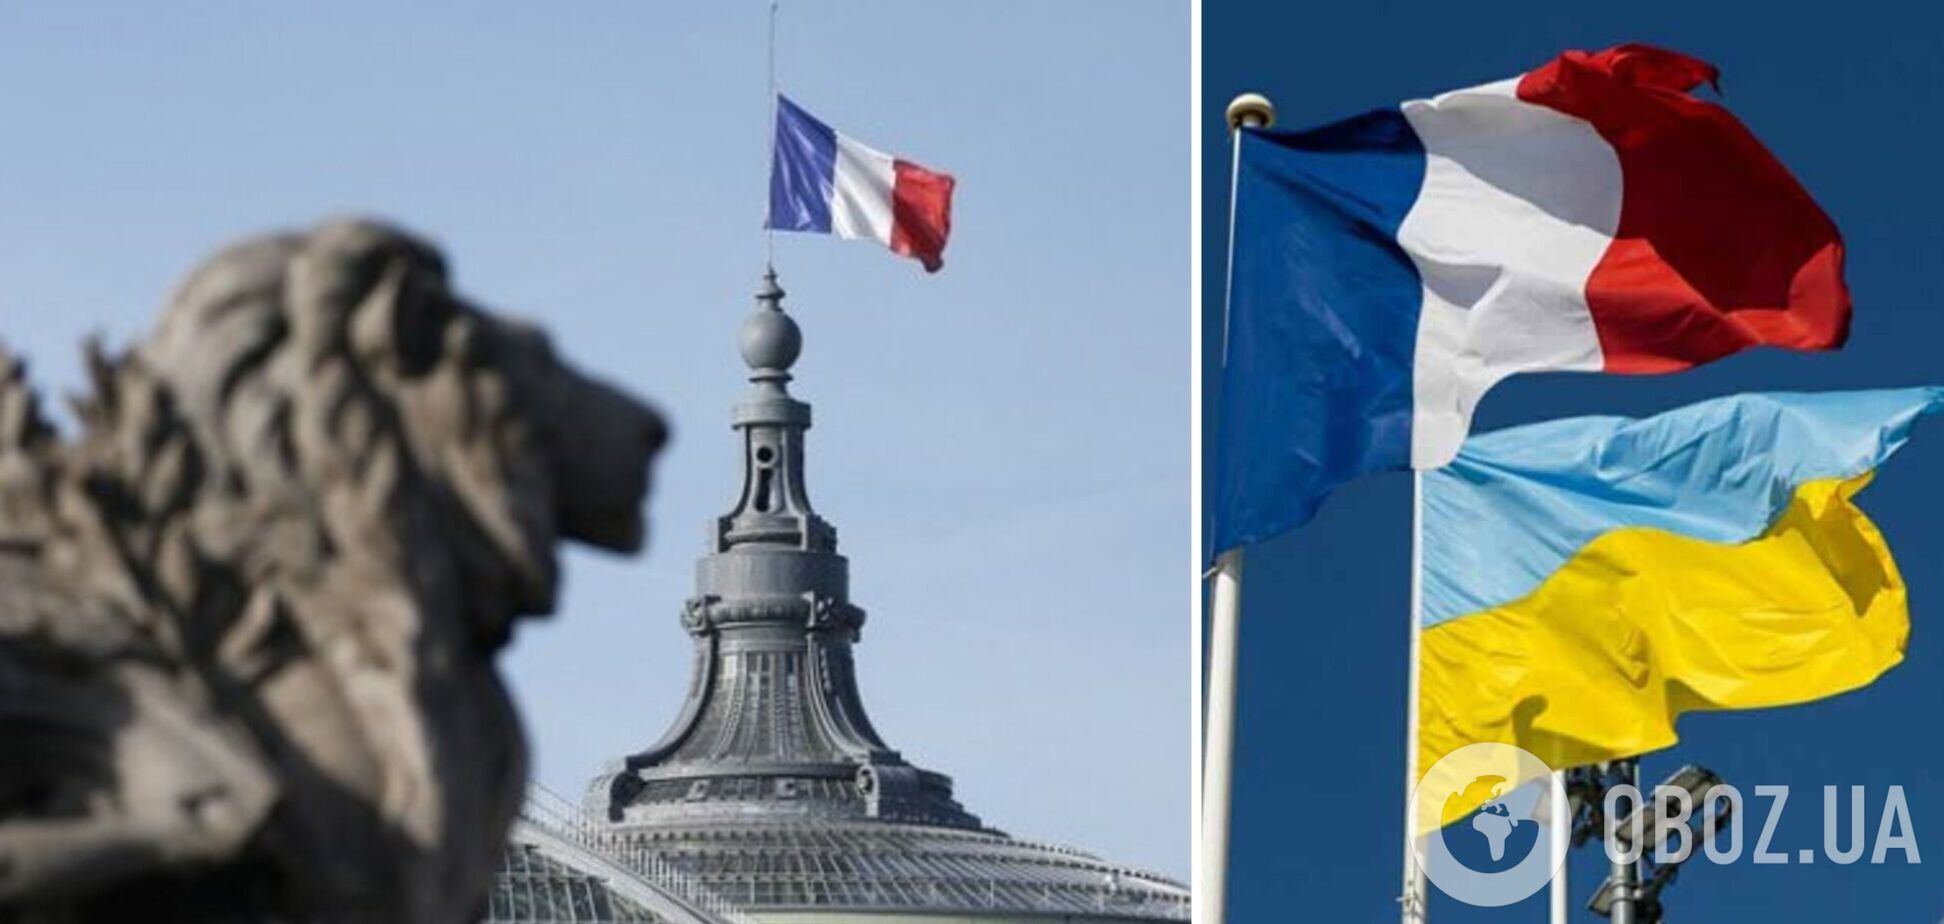 Франція готова стати одним із гарантів безпеки для України: в МЗС зробили заяву